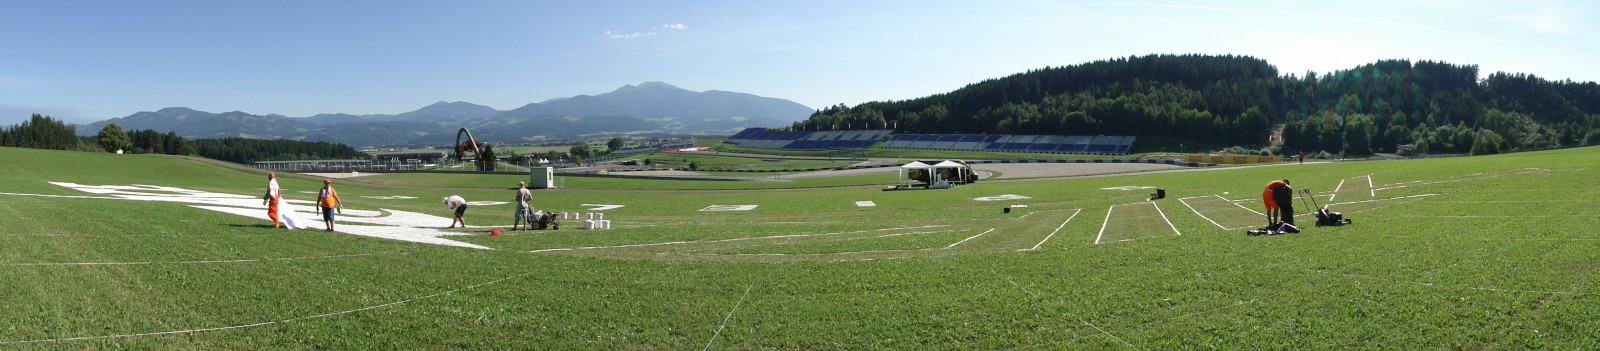 Arbeit am Logo auf dem Gras - Red Bull Air Race Spielberg Österreich | Redbull Air Race | Portfolio